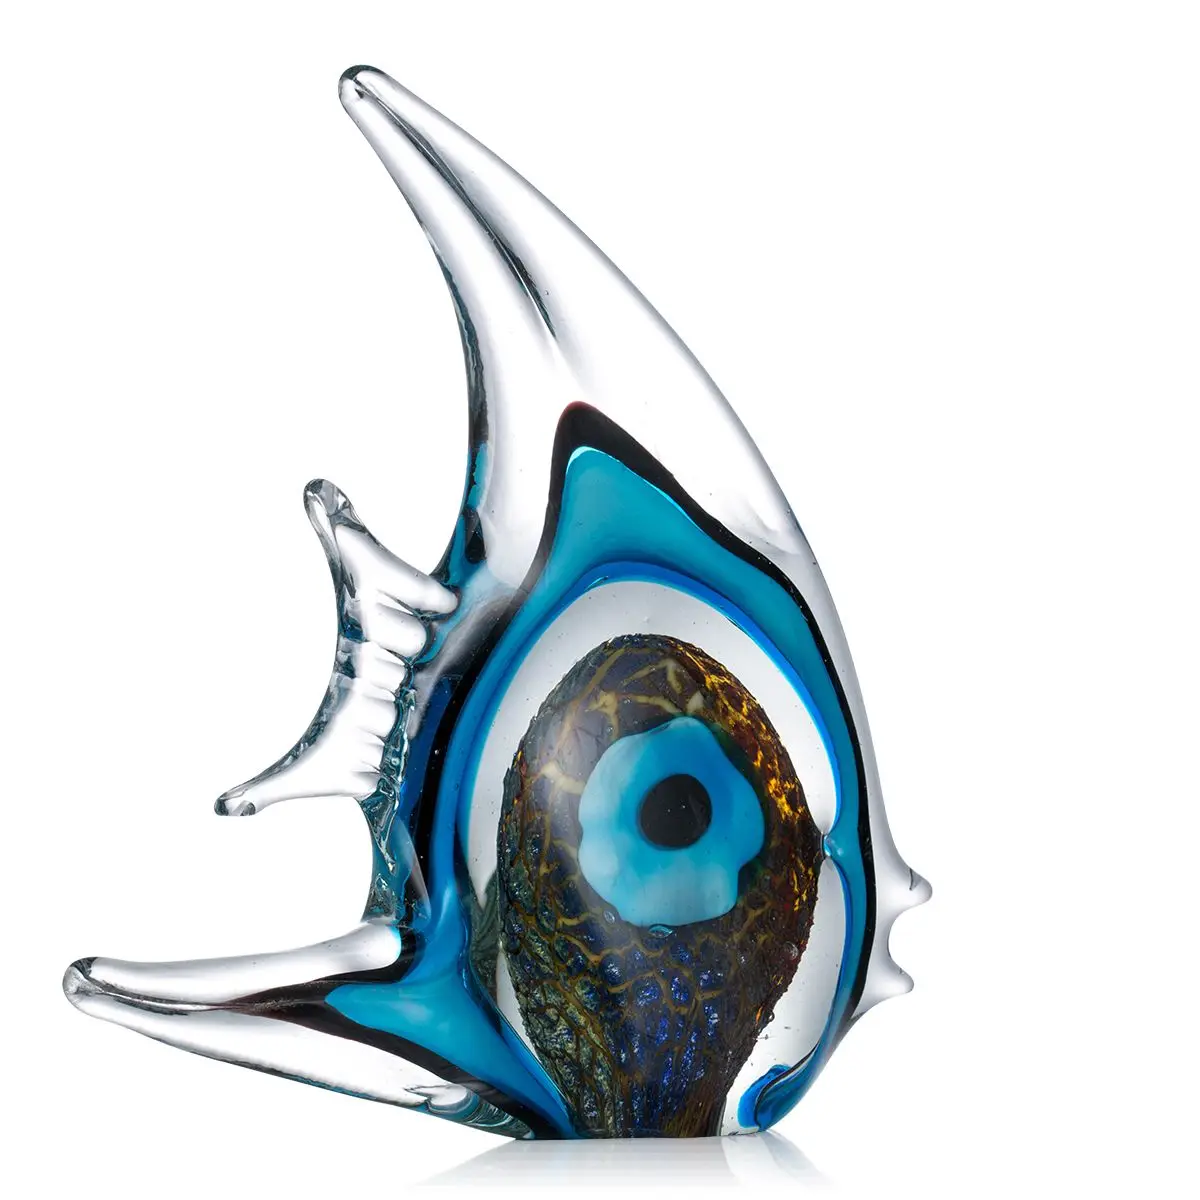 Tooarts decoracion hogar в синюю полоску, стеклянная скульптура для тропических рыб, статуэтка, аксессуары для украшения дома, современная стеклянная рыба